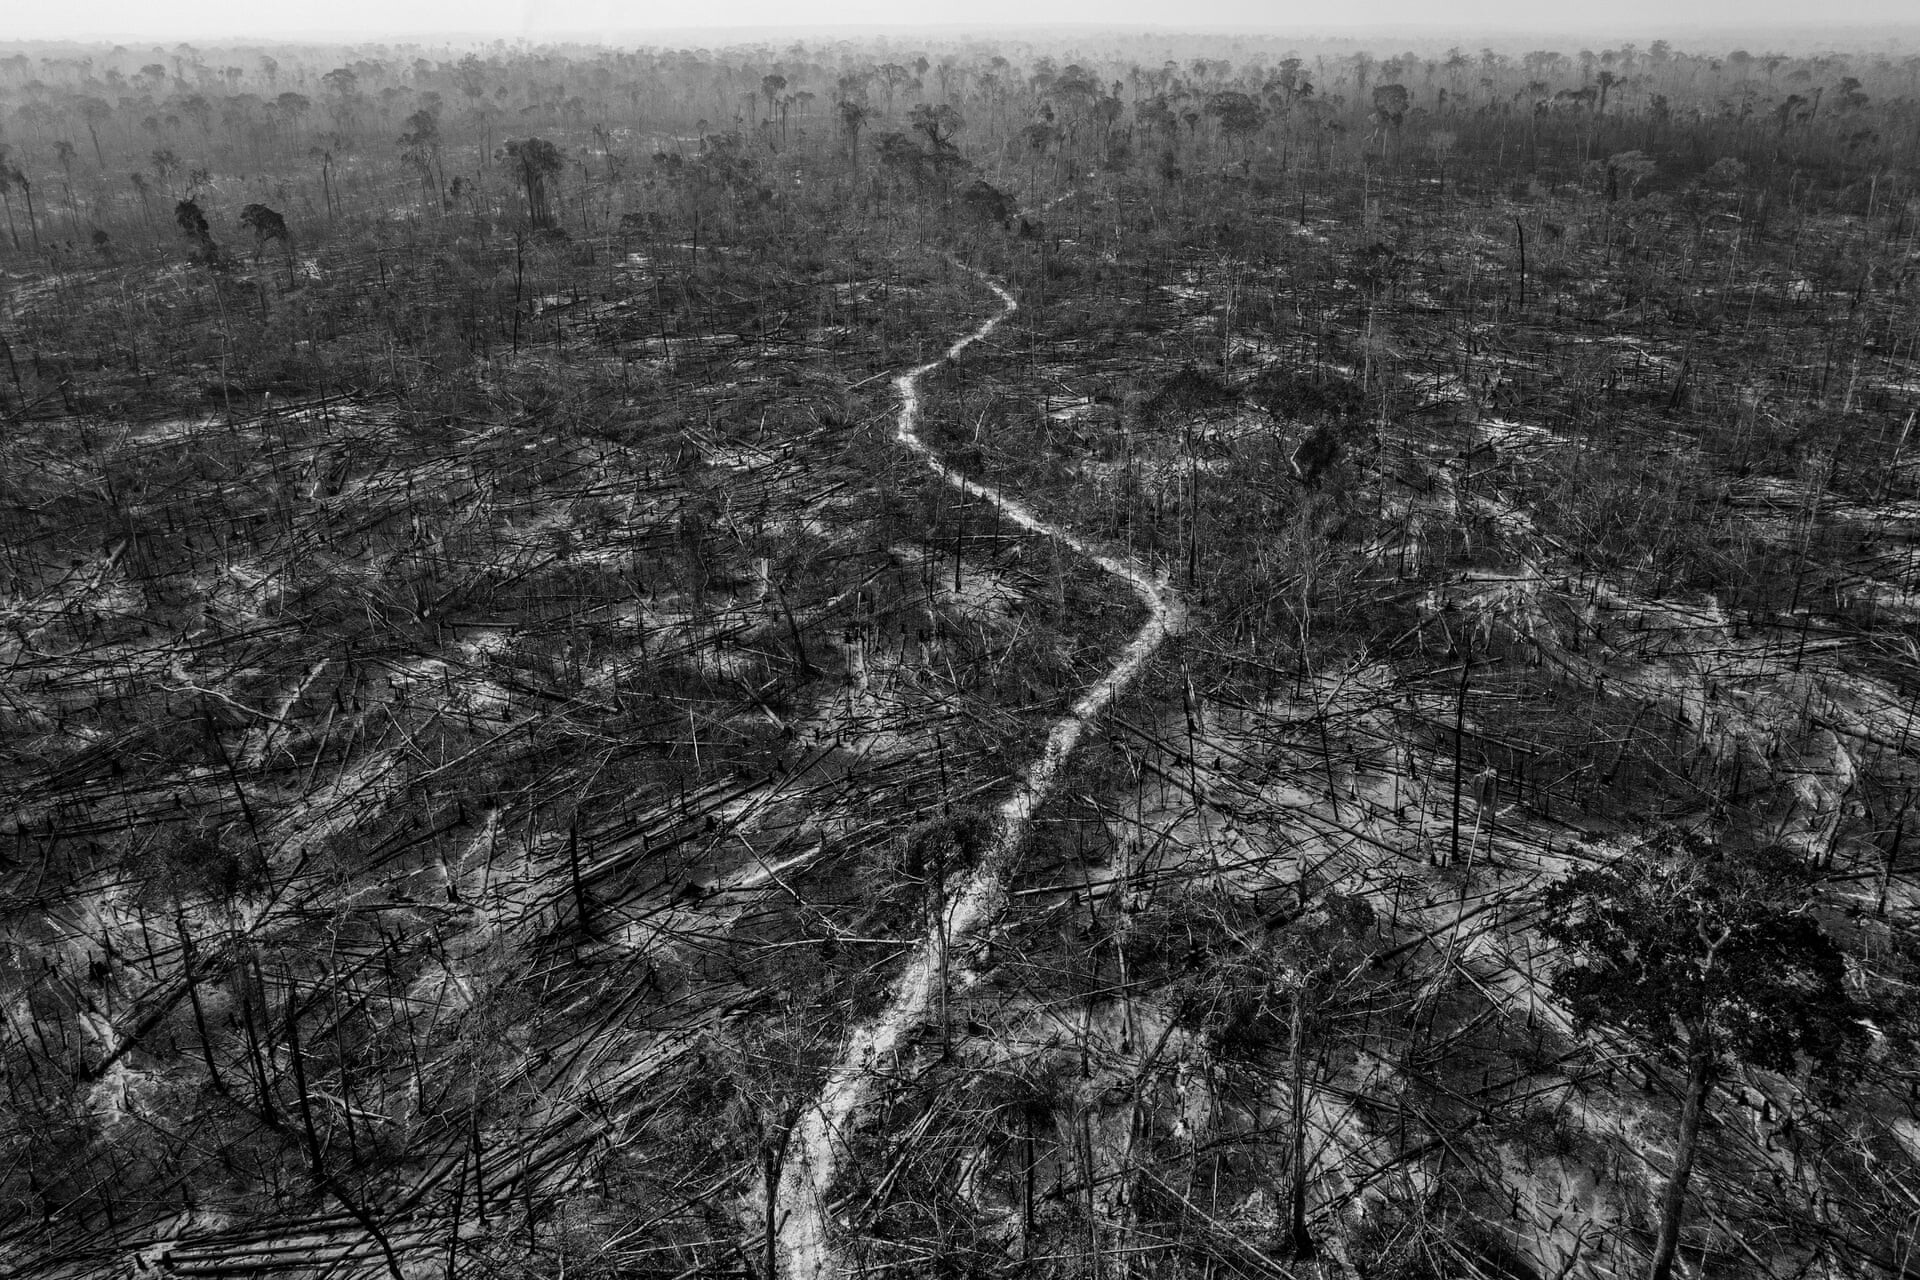 Победитель, Южная Америка, долгосрочный проект, 2022. Амазонская антиутопия. Проект об угрозе, что влечёт за собой вырубка тропических лесов. Автор Лало де Алмейд